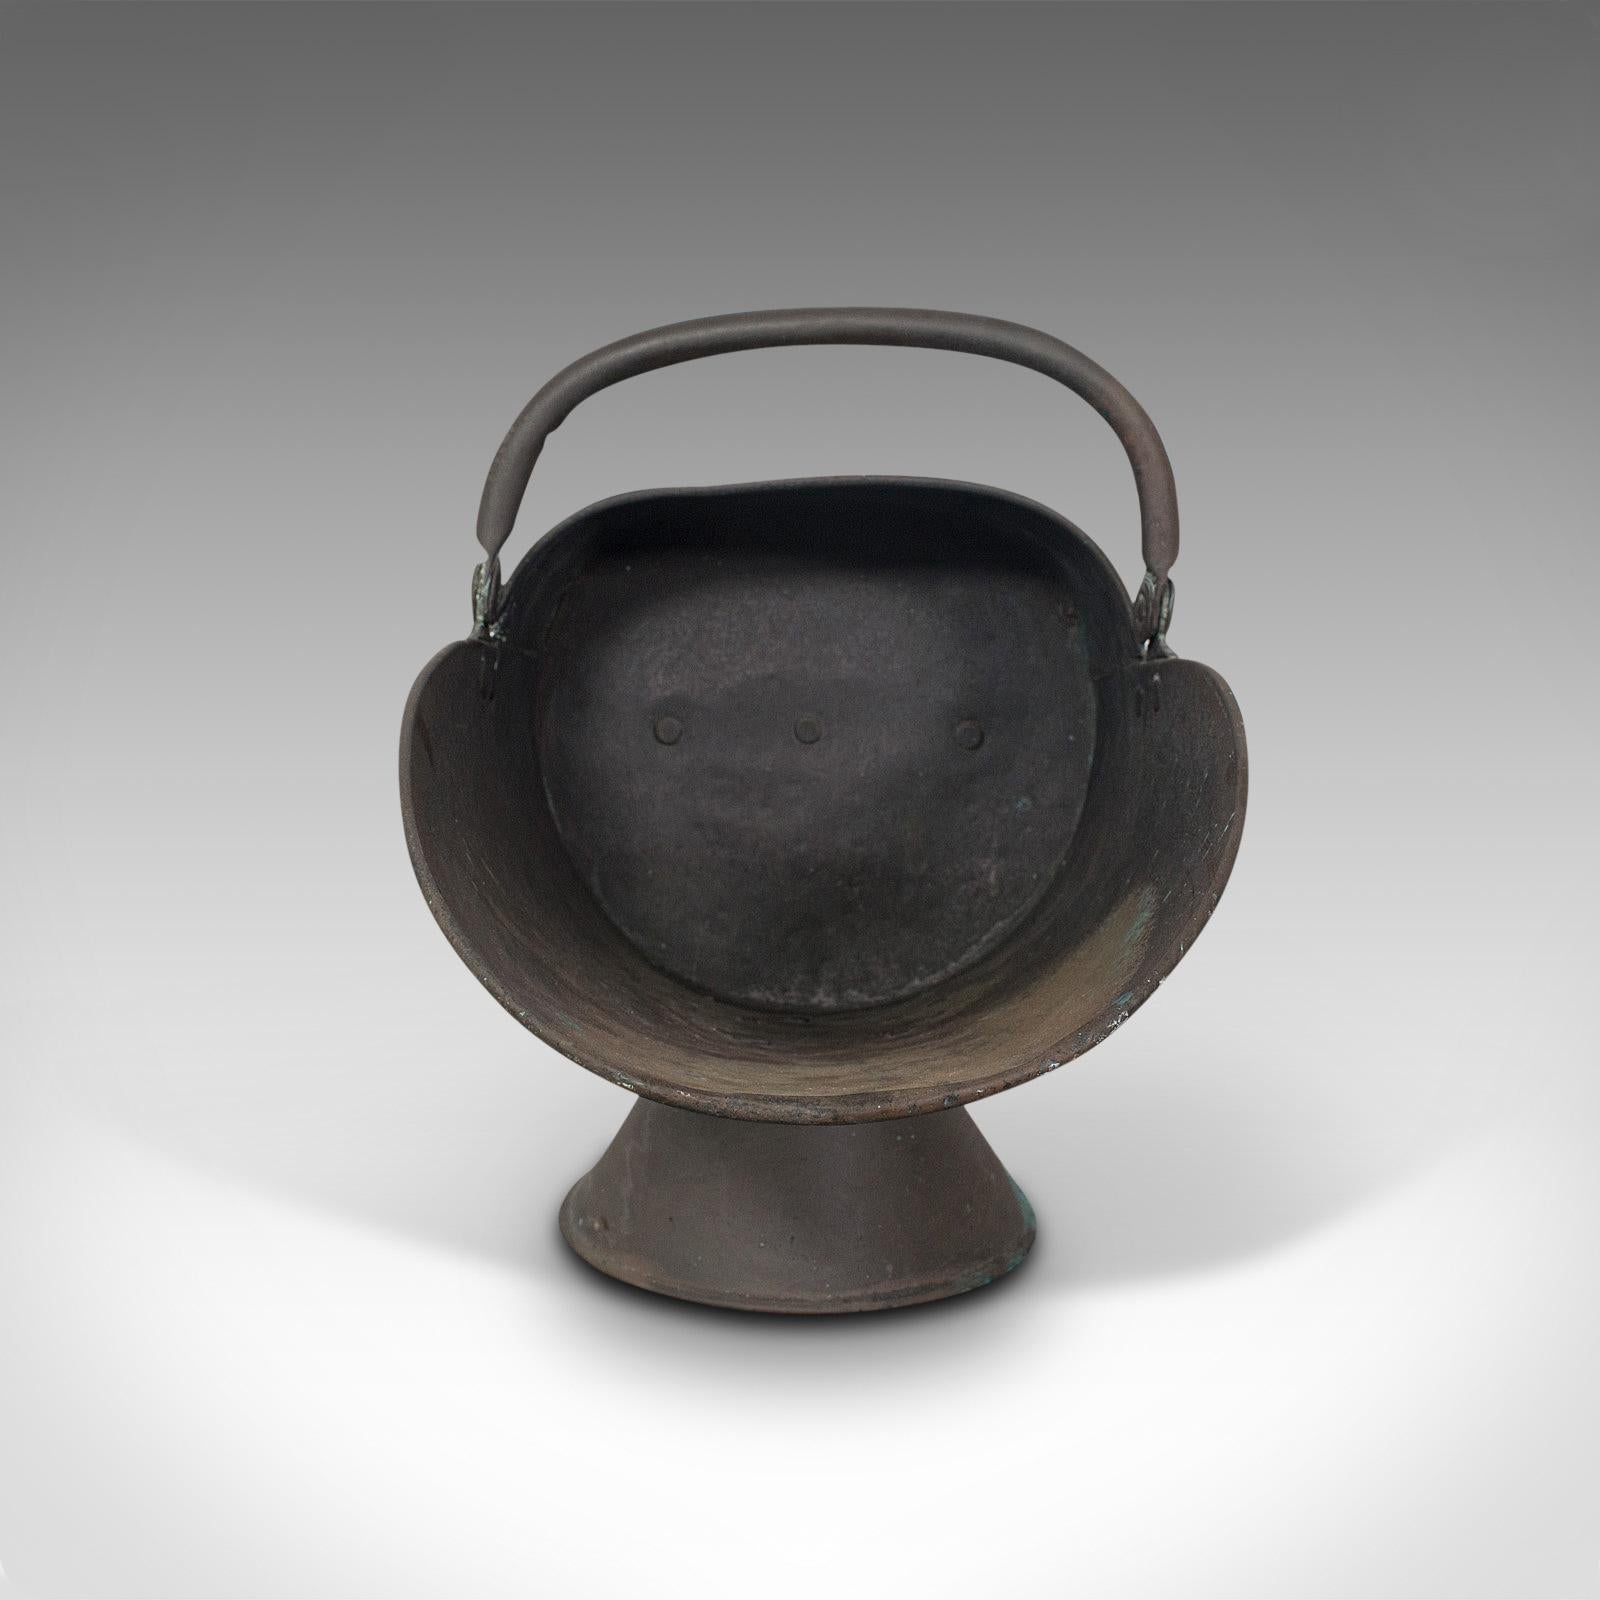 Il s'agit d'un scuttle de casque antique. Un seau à charbon ou à bûches en cuivre, datant de la période victorienne, vers 1870.

Attrayant hublot pour casque de cheminée
Présente une patine vieillie souhaitable, agréablement non polie
Cuivre